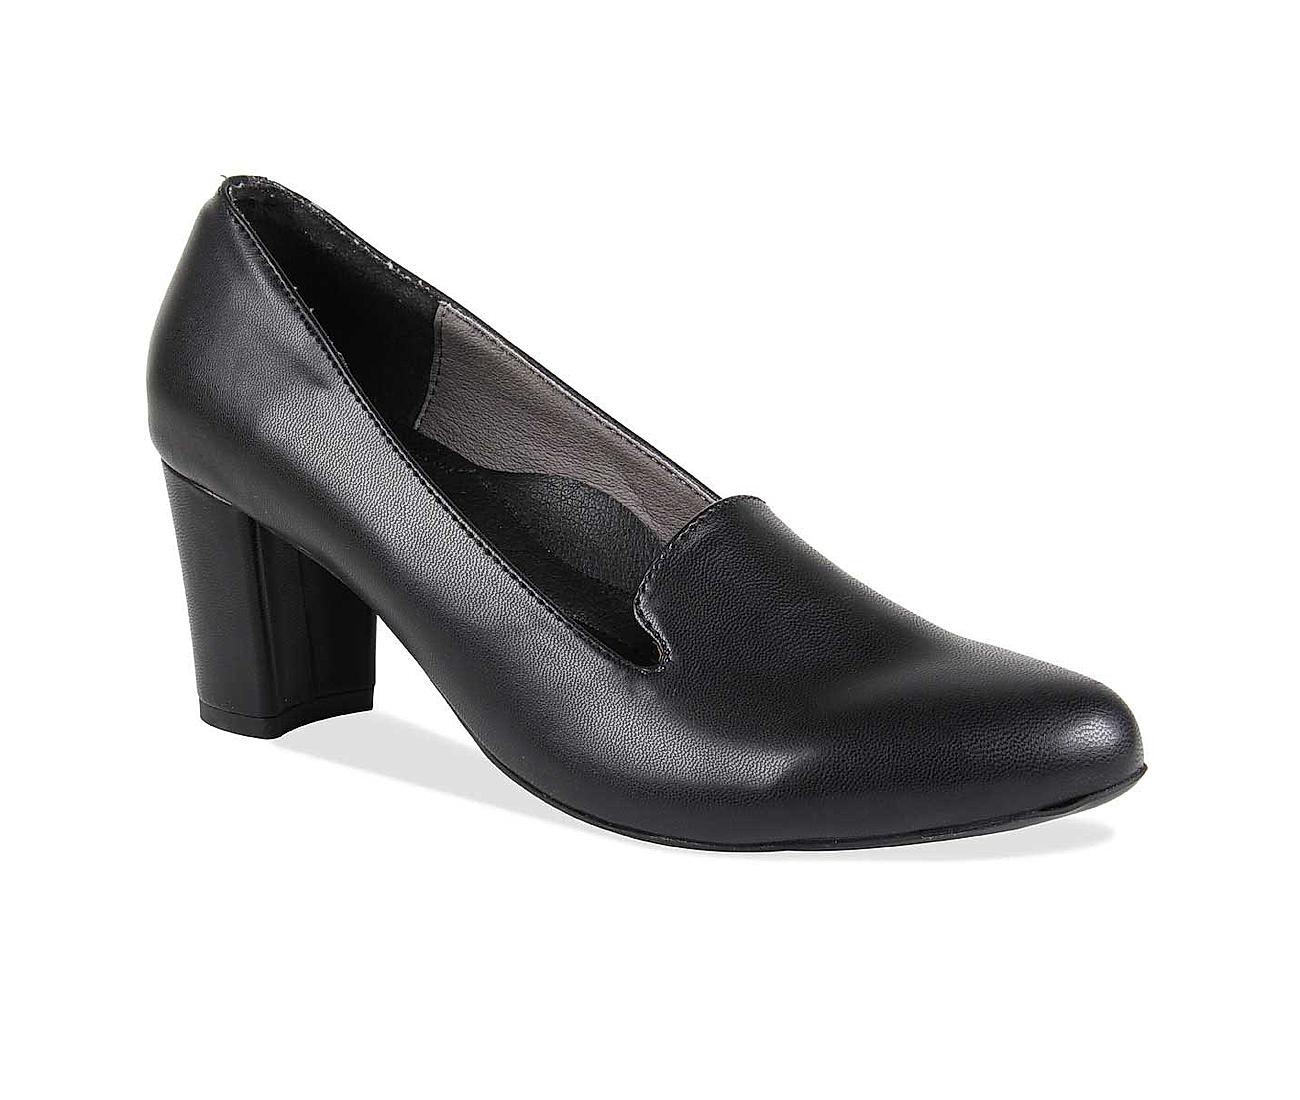 Chic Grey Suede Heels - Ankle Strap Heels - Vegan Suede Heels - $32.00 -  Lulus